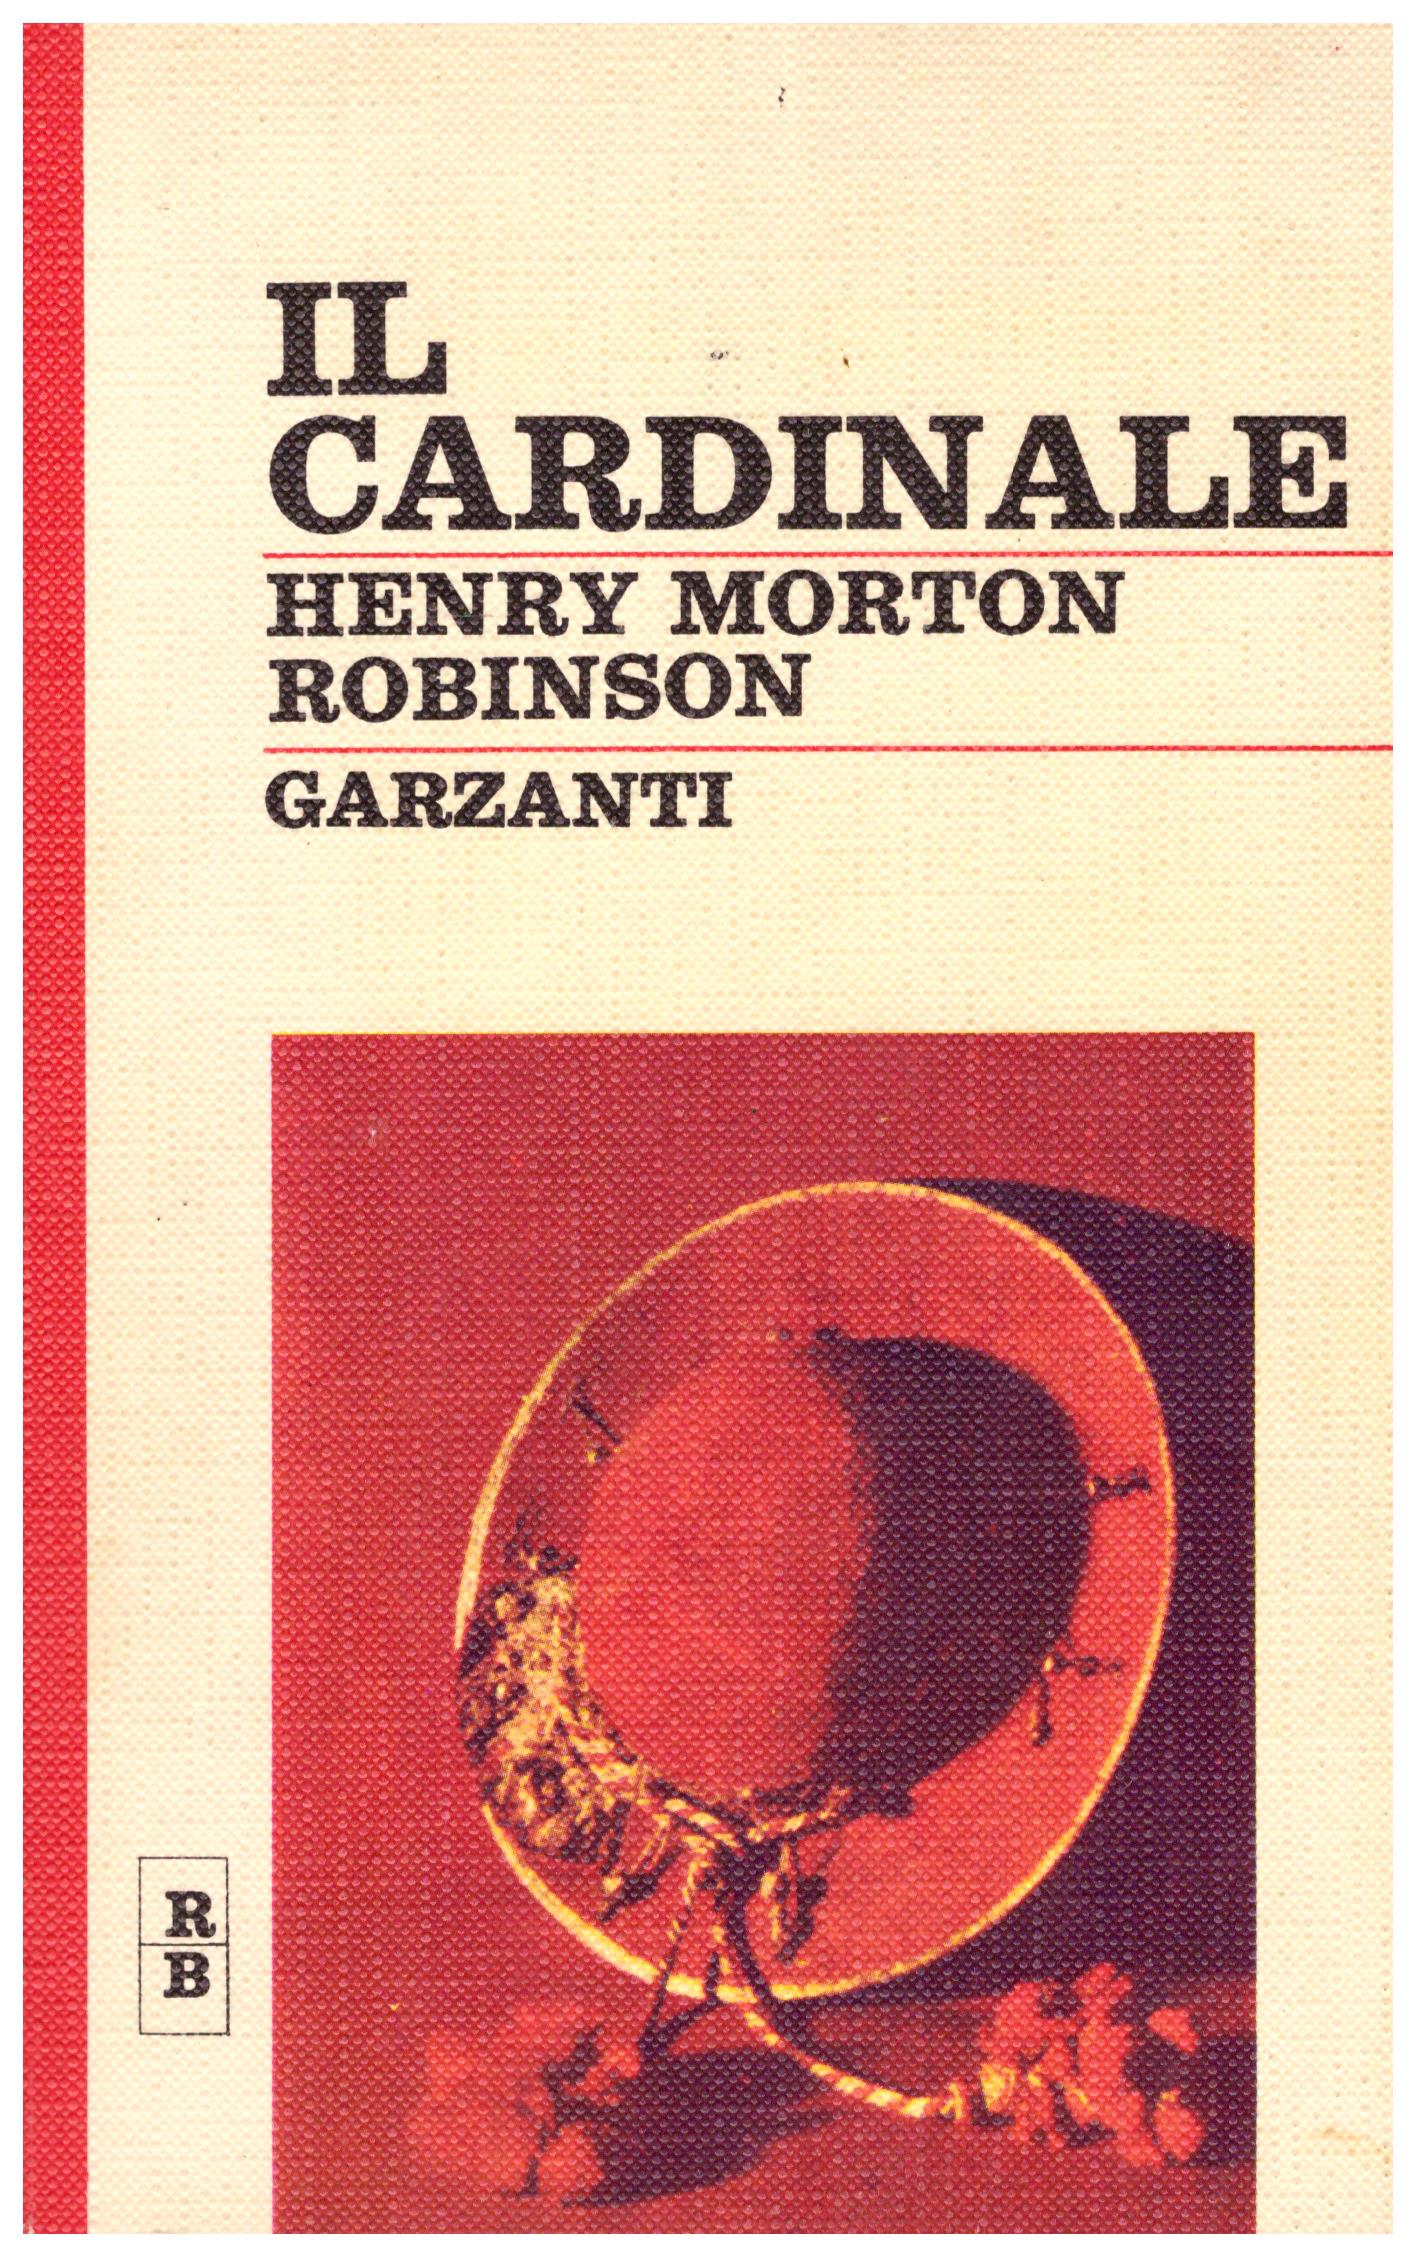 Titolo: Il cardinale Autore : Henry Morton Robinson Editore: Garzanti 1966